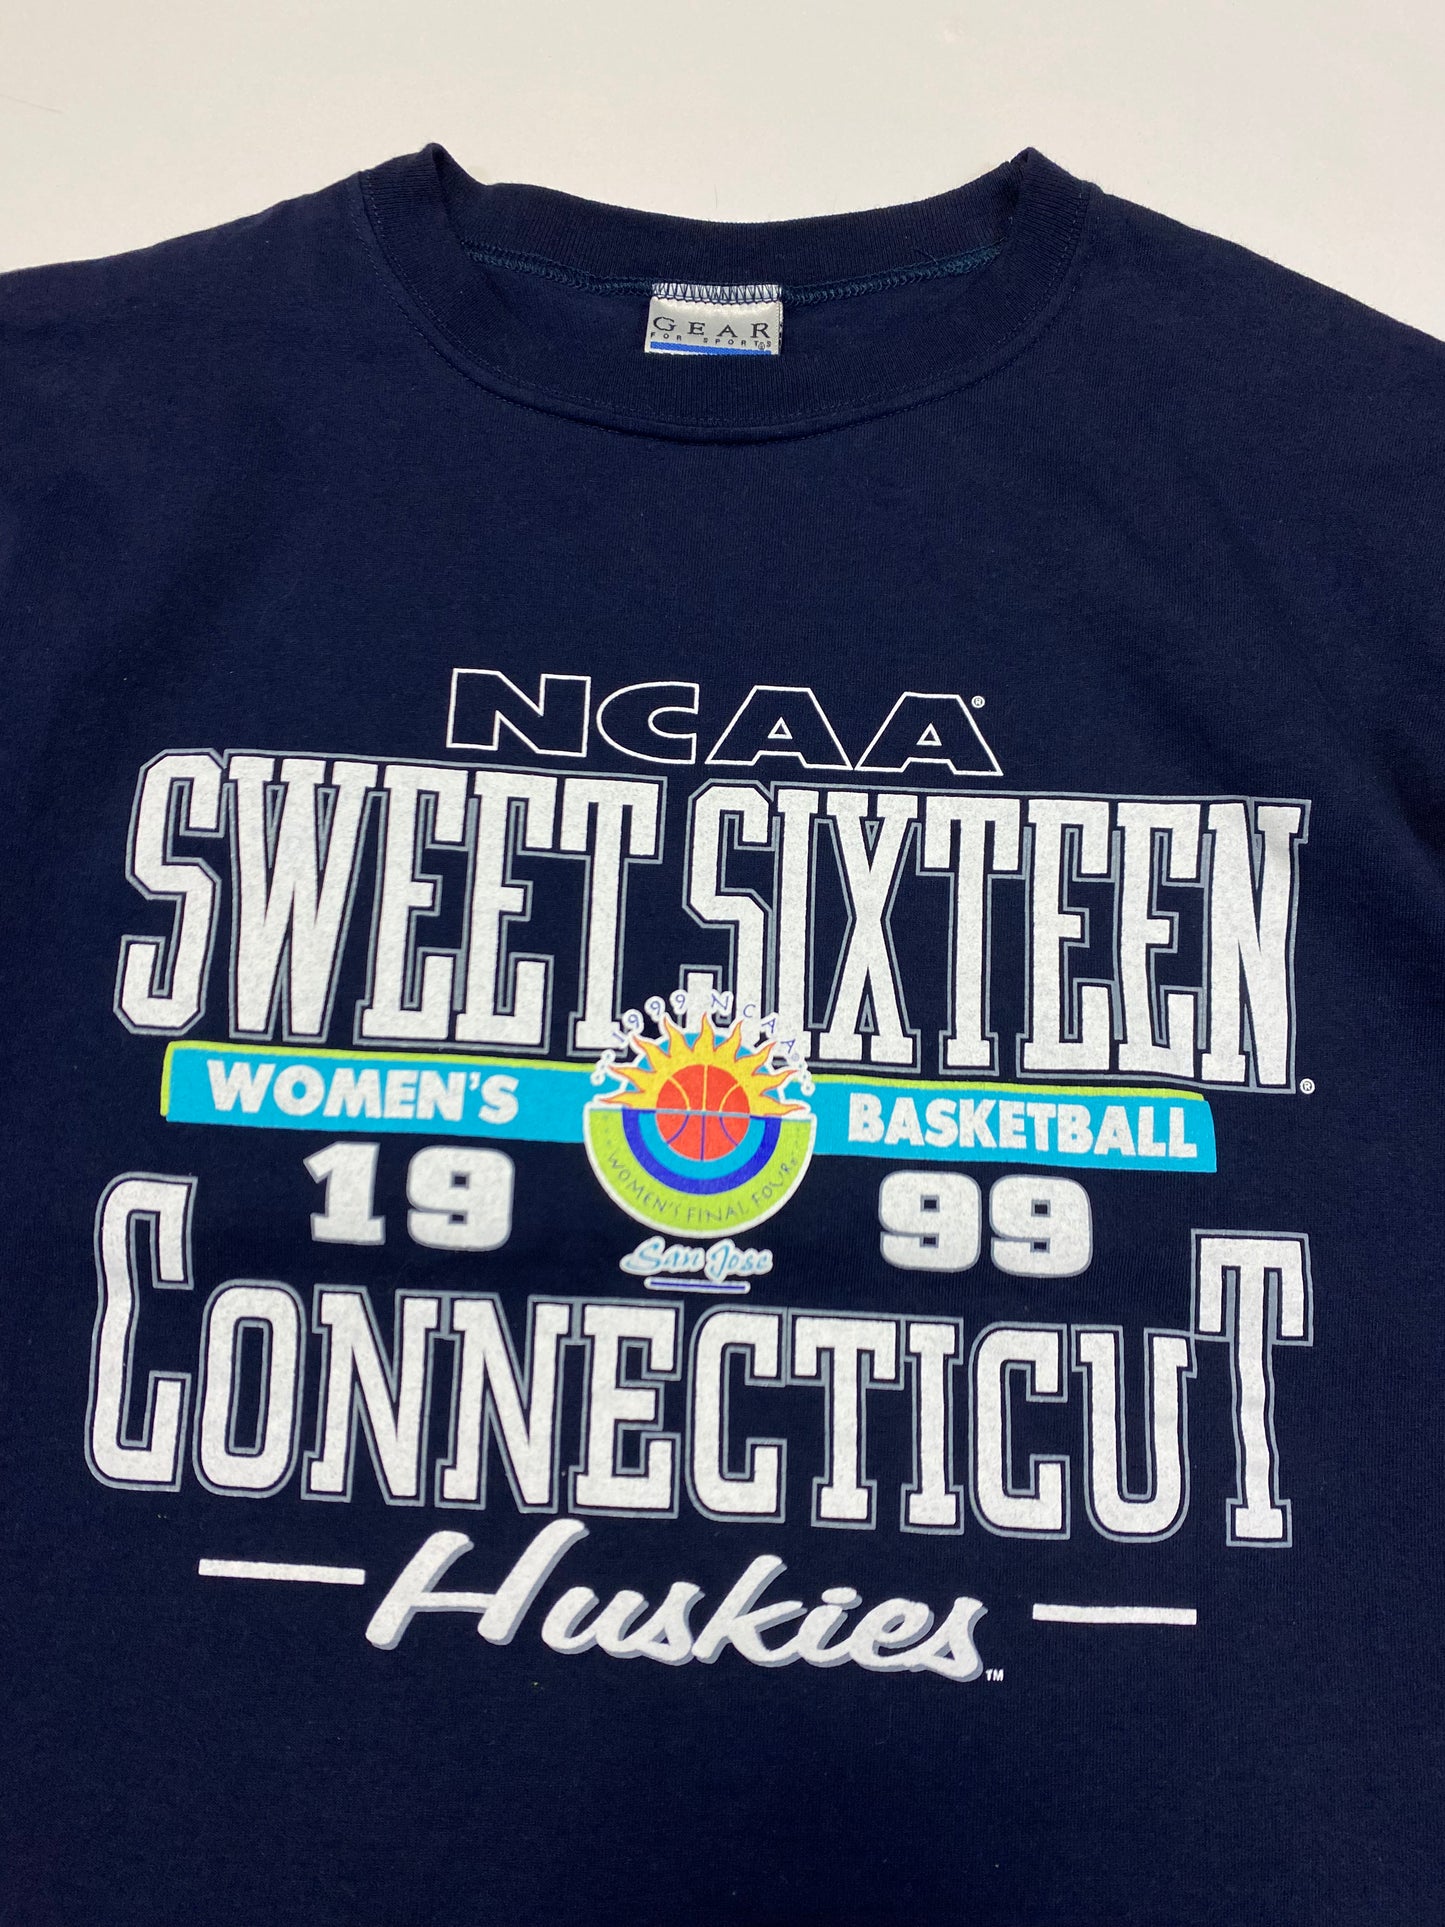 1999 UConn Huskies Women’s Basketball Shirt